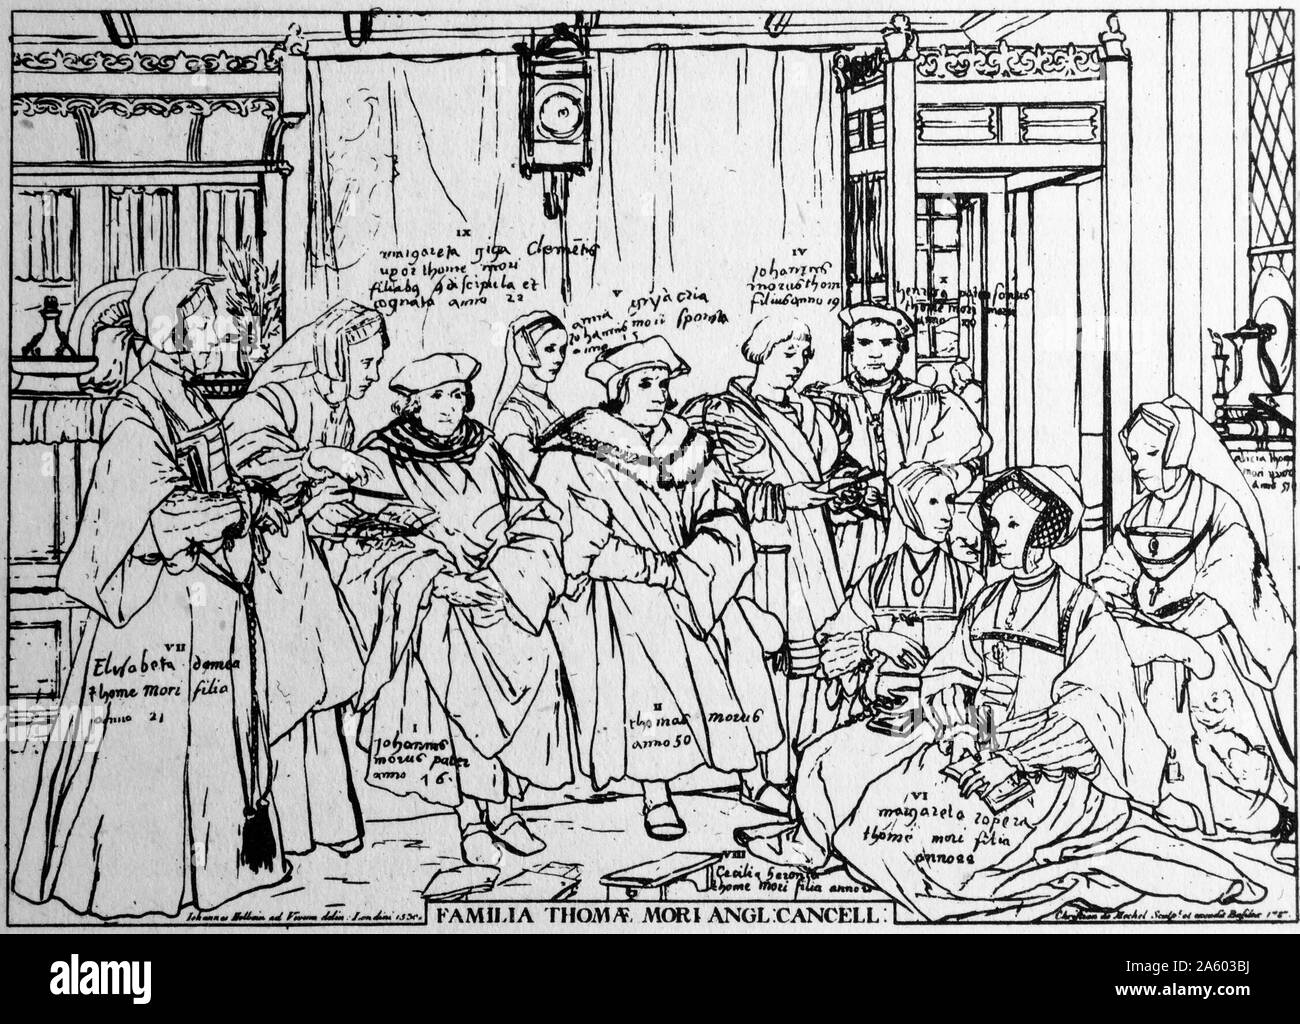 Gravur, die Darstellung der Adelsfamilie von Sir Thomas More (1478-1535) ein englischer Rechtsanwalt Sozialphilosoph, Schriftsteller, Staatsmann und Humanist der Renaissance festgestellt. Datiert aus dem 16. Jahrhundert Stockfoto